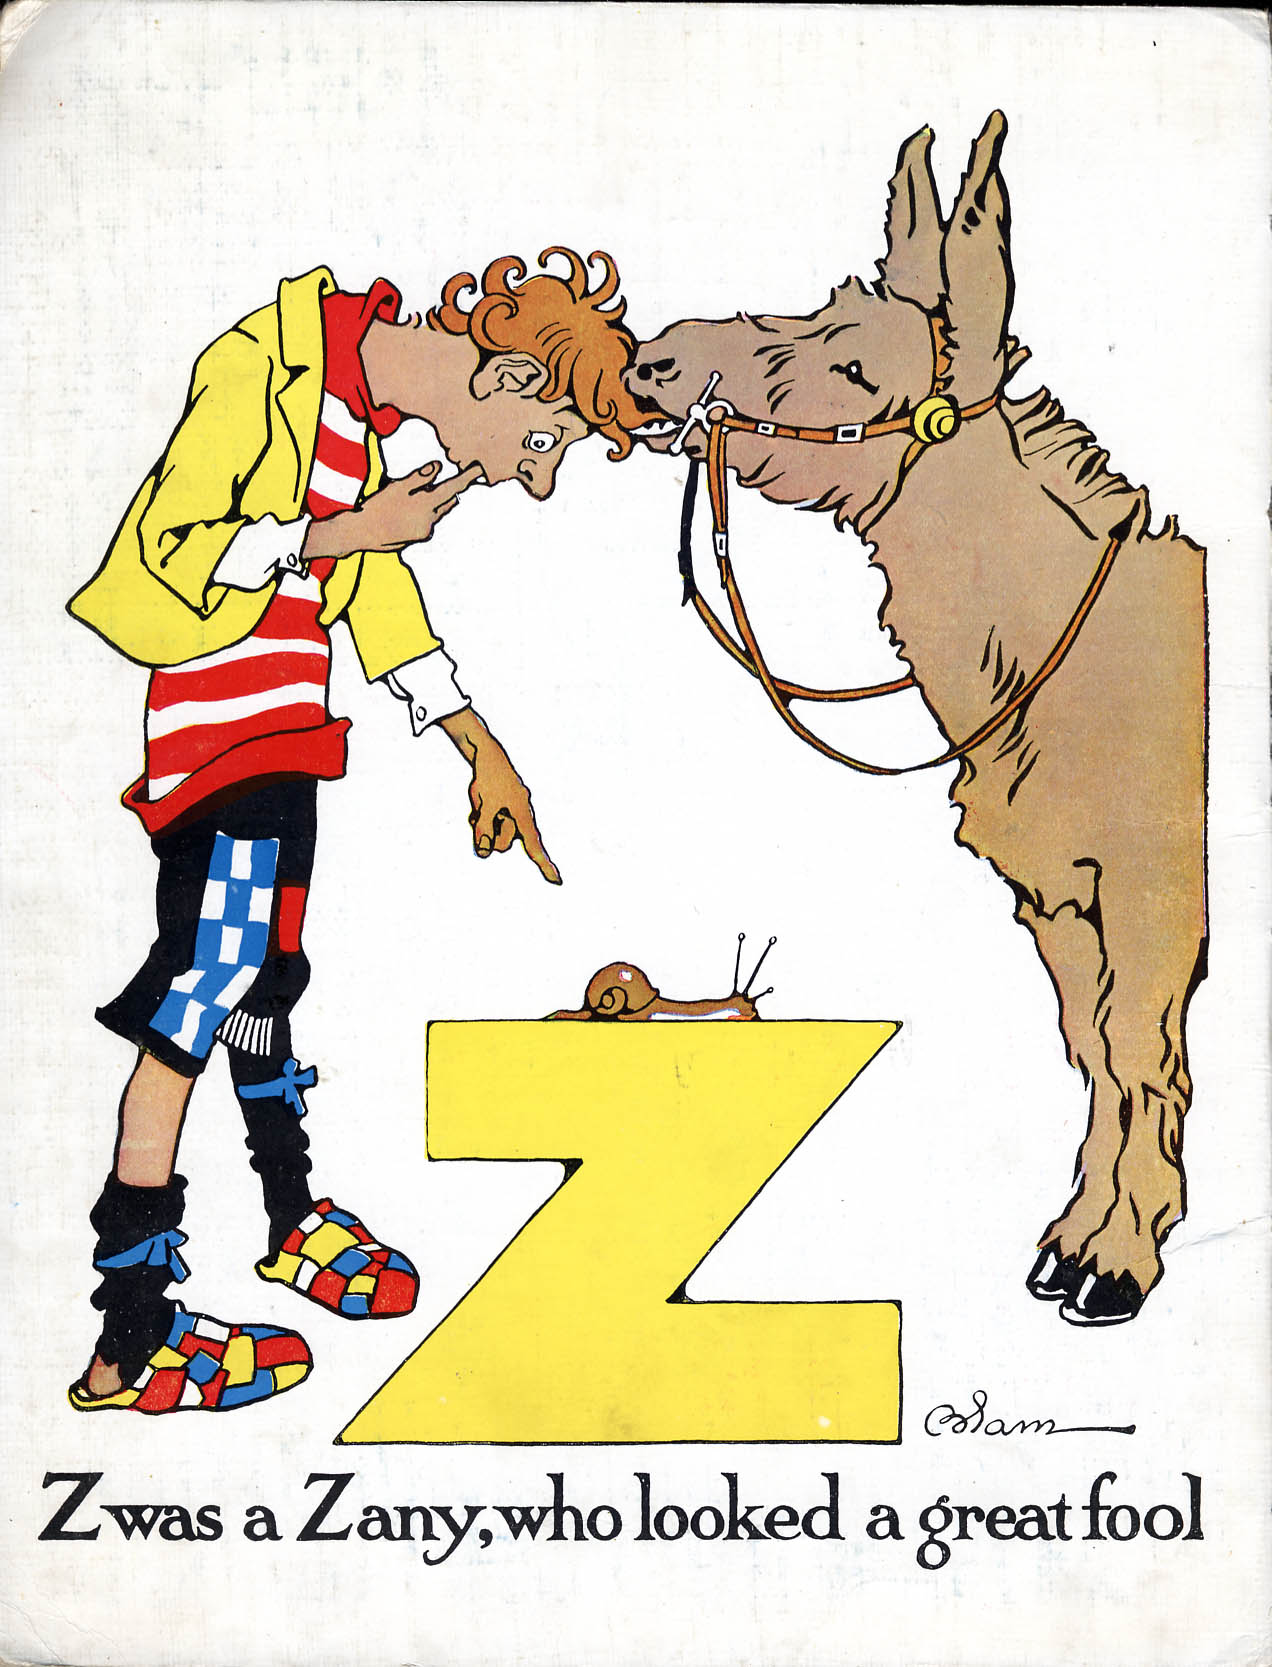 Image of letter Z